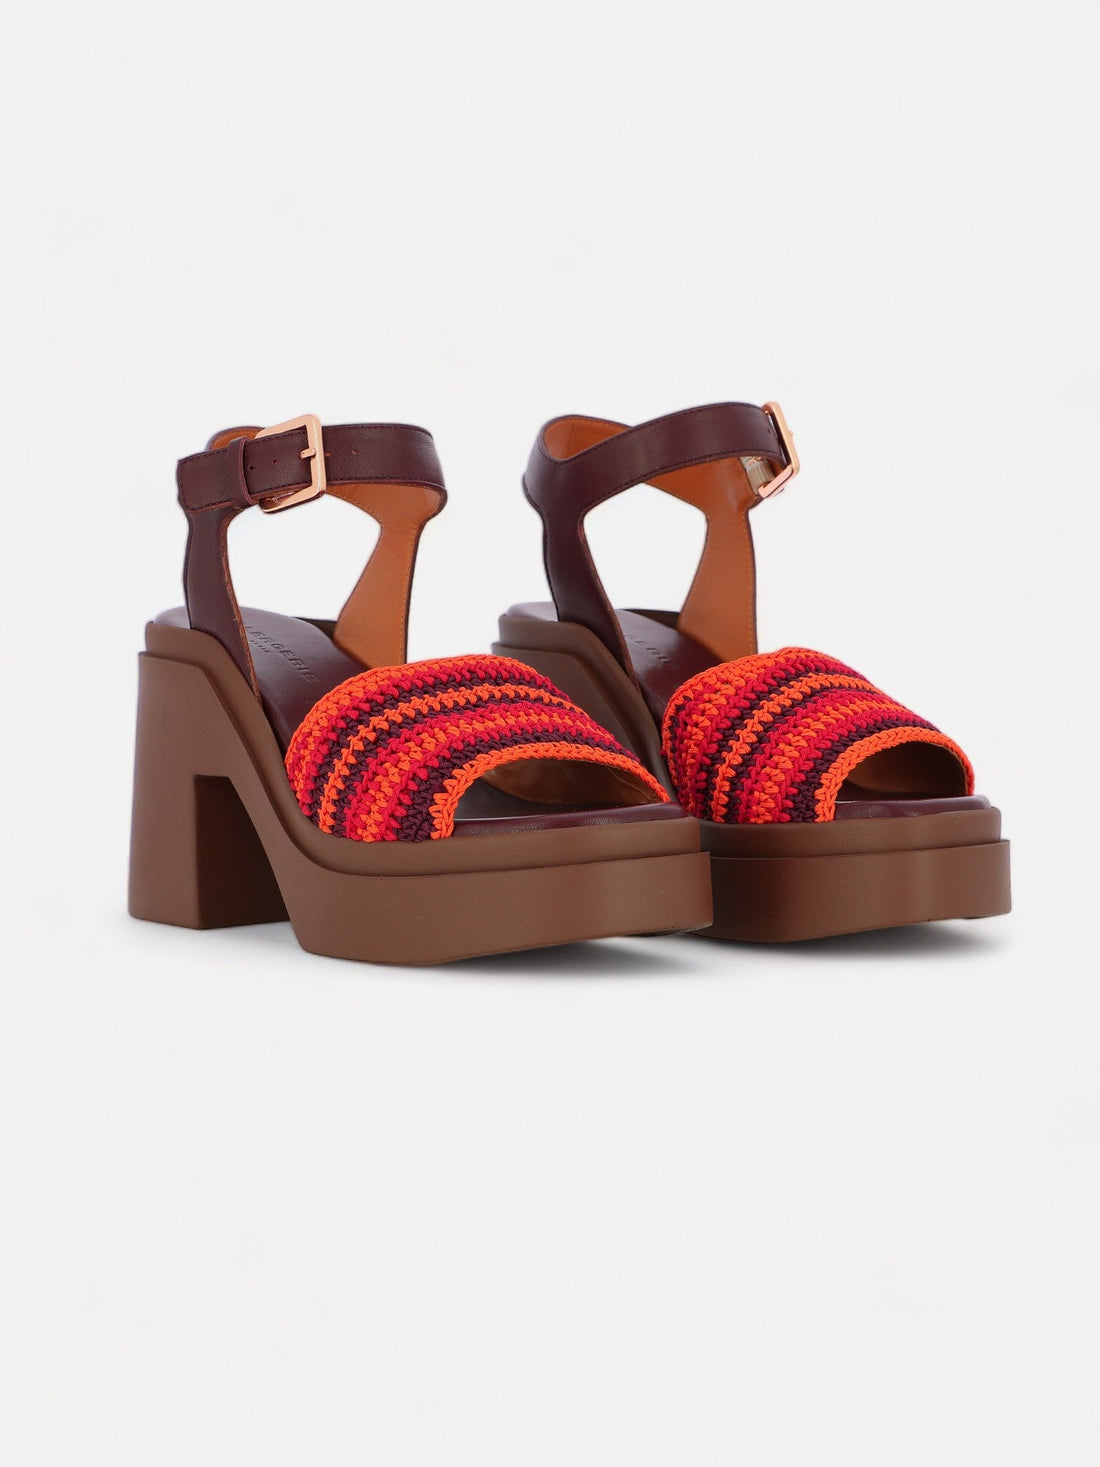 SANDALS - NOUST sandals, crochet red - 3606063982757 - Clergerie Paris - Europe